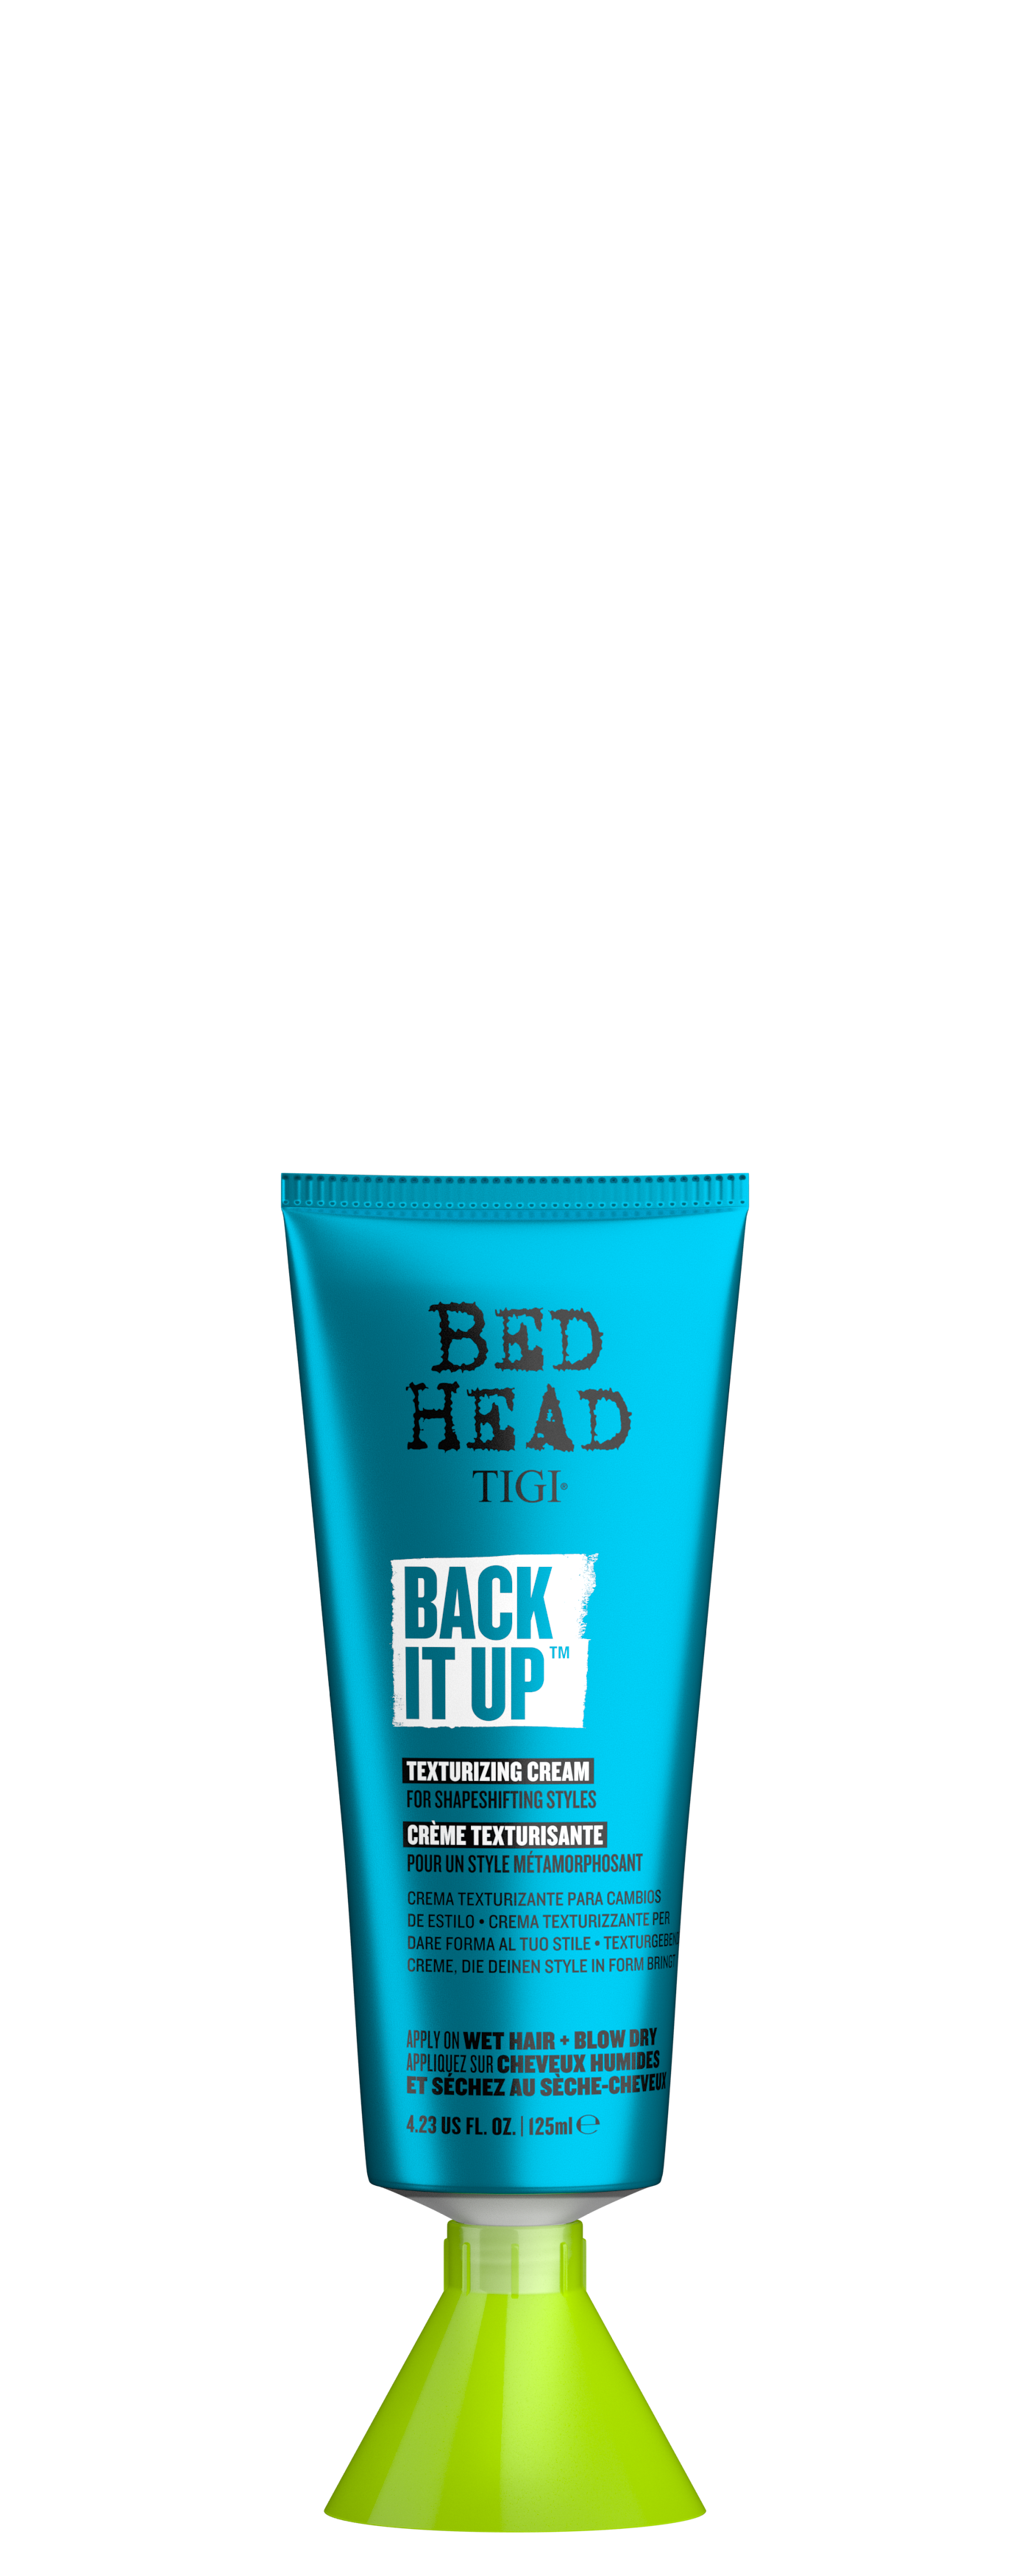 Кремы для волос:  TIGI -  Текстурирующий крем для волос BACK IT UP BED HEAD (125 мл)